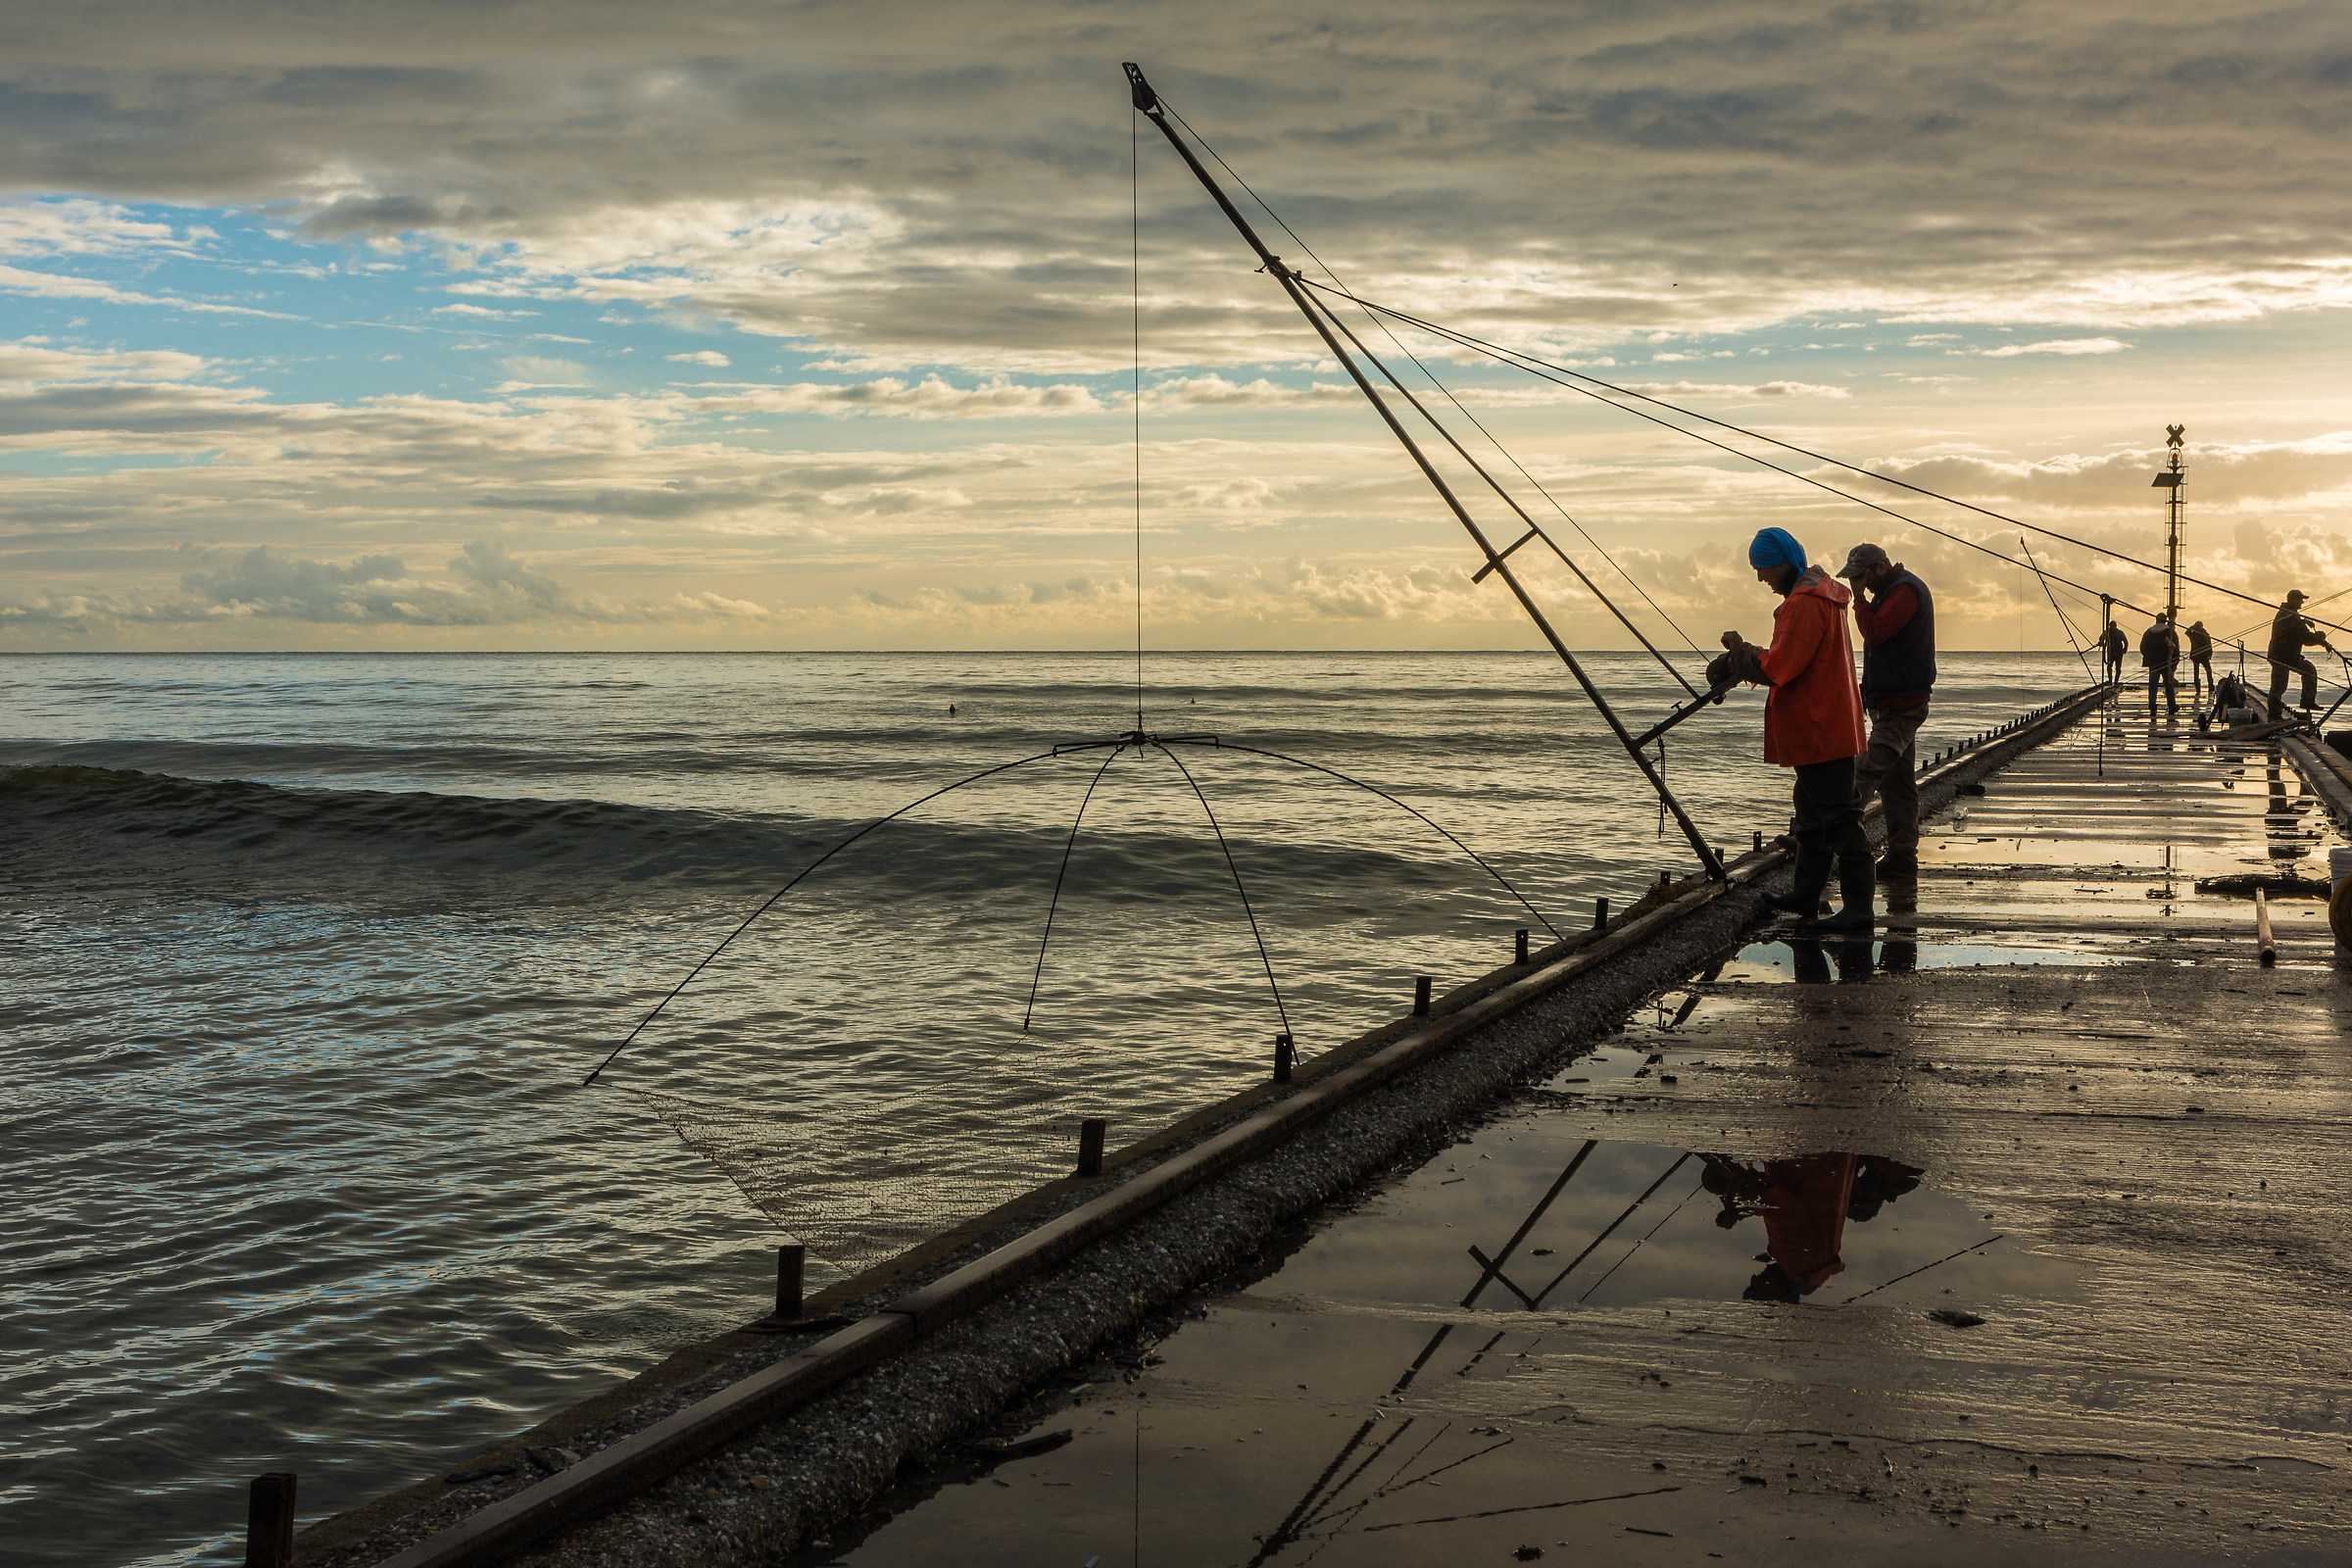 Fishermen in action...